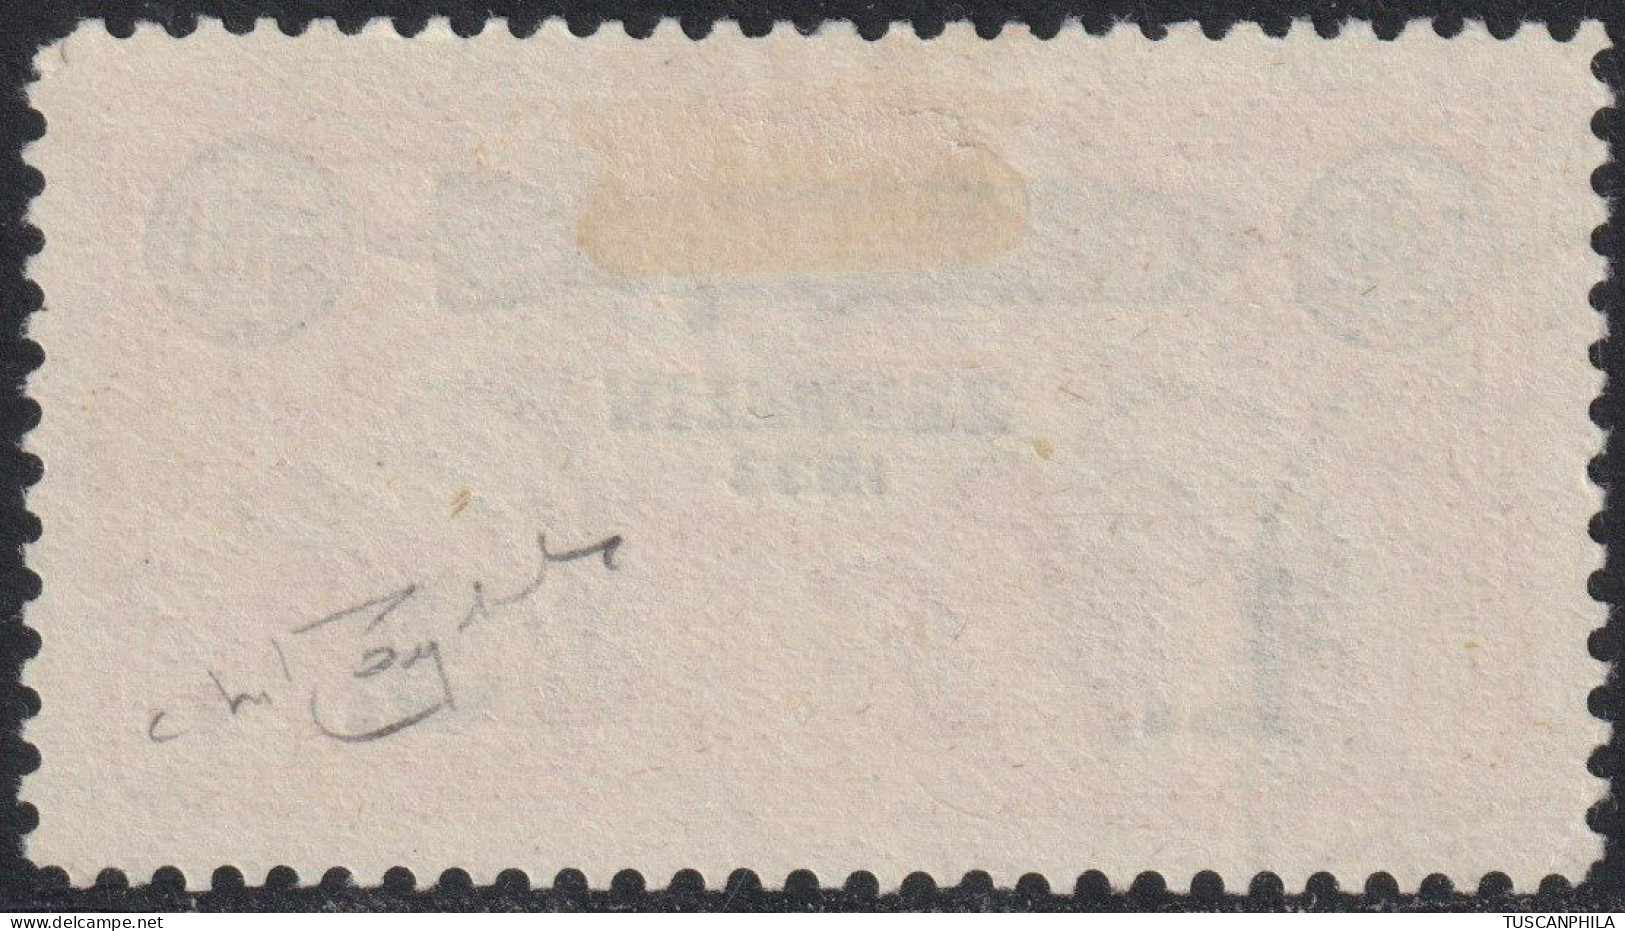 San Marino 1933 - Posta Aerea Zeppelin Soprastampato 3 L. Su 50 C. Arancio Usato Periziato - Sassone N.11 - Used Stamps